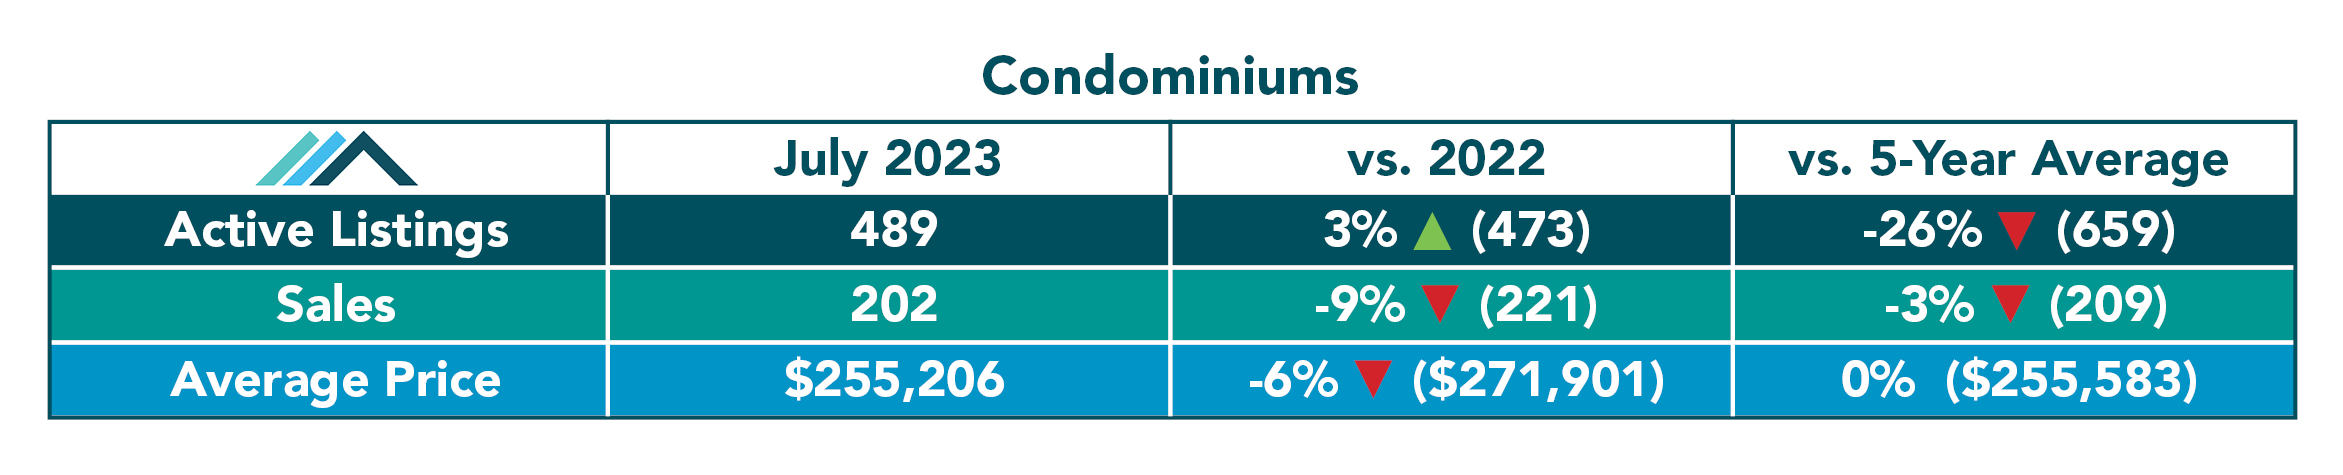 Condominium Tables July 2023